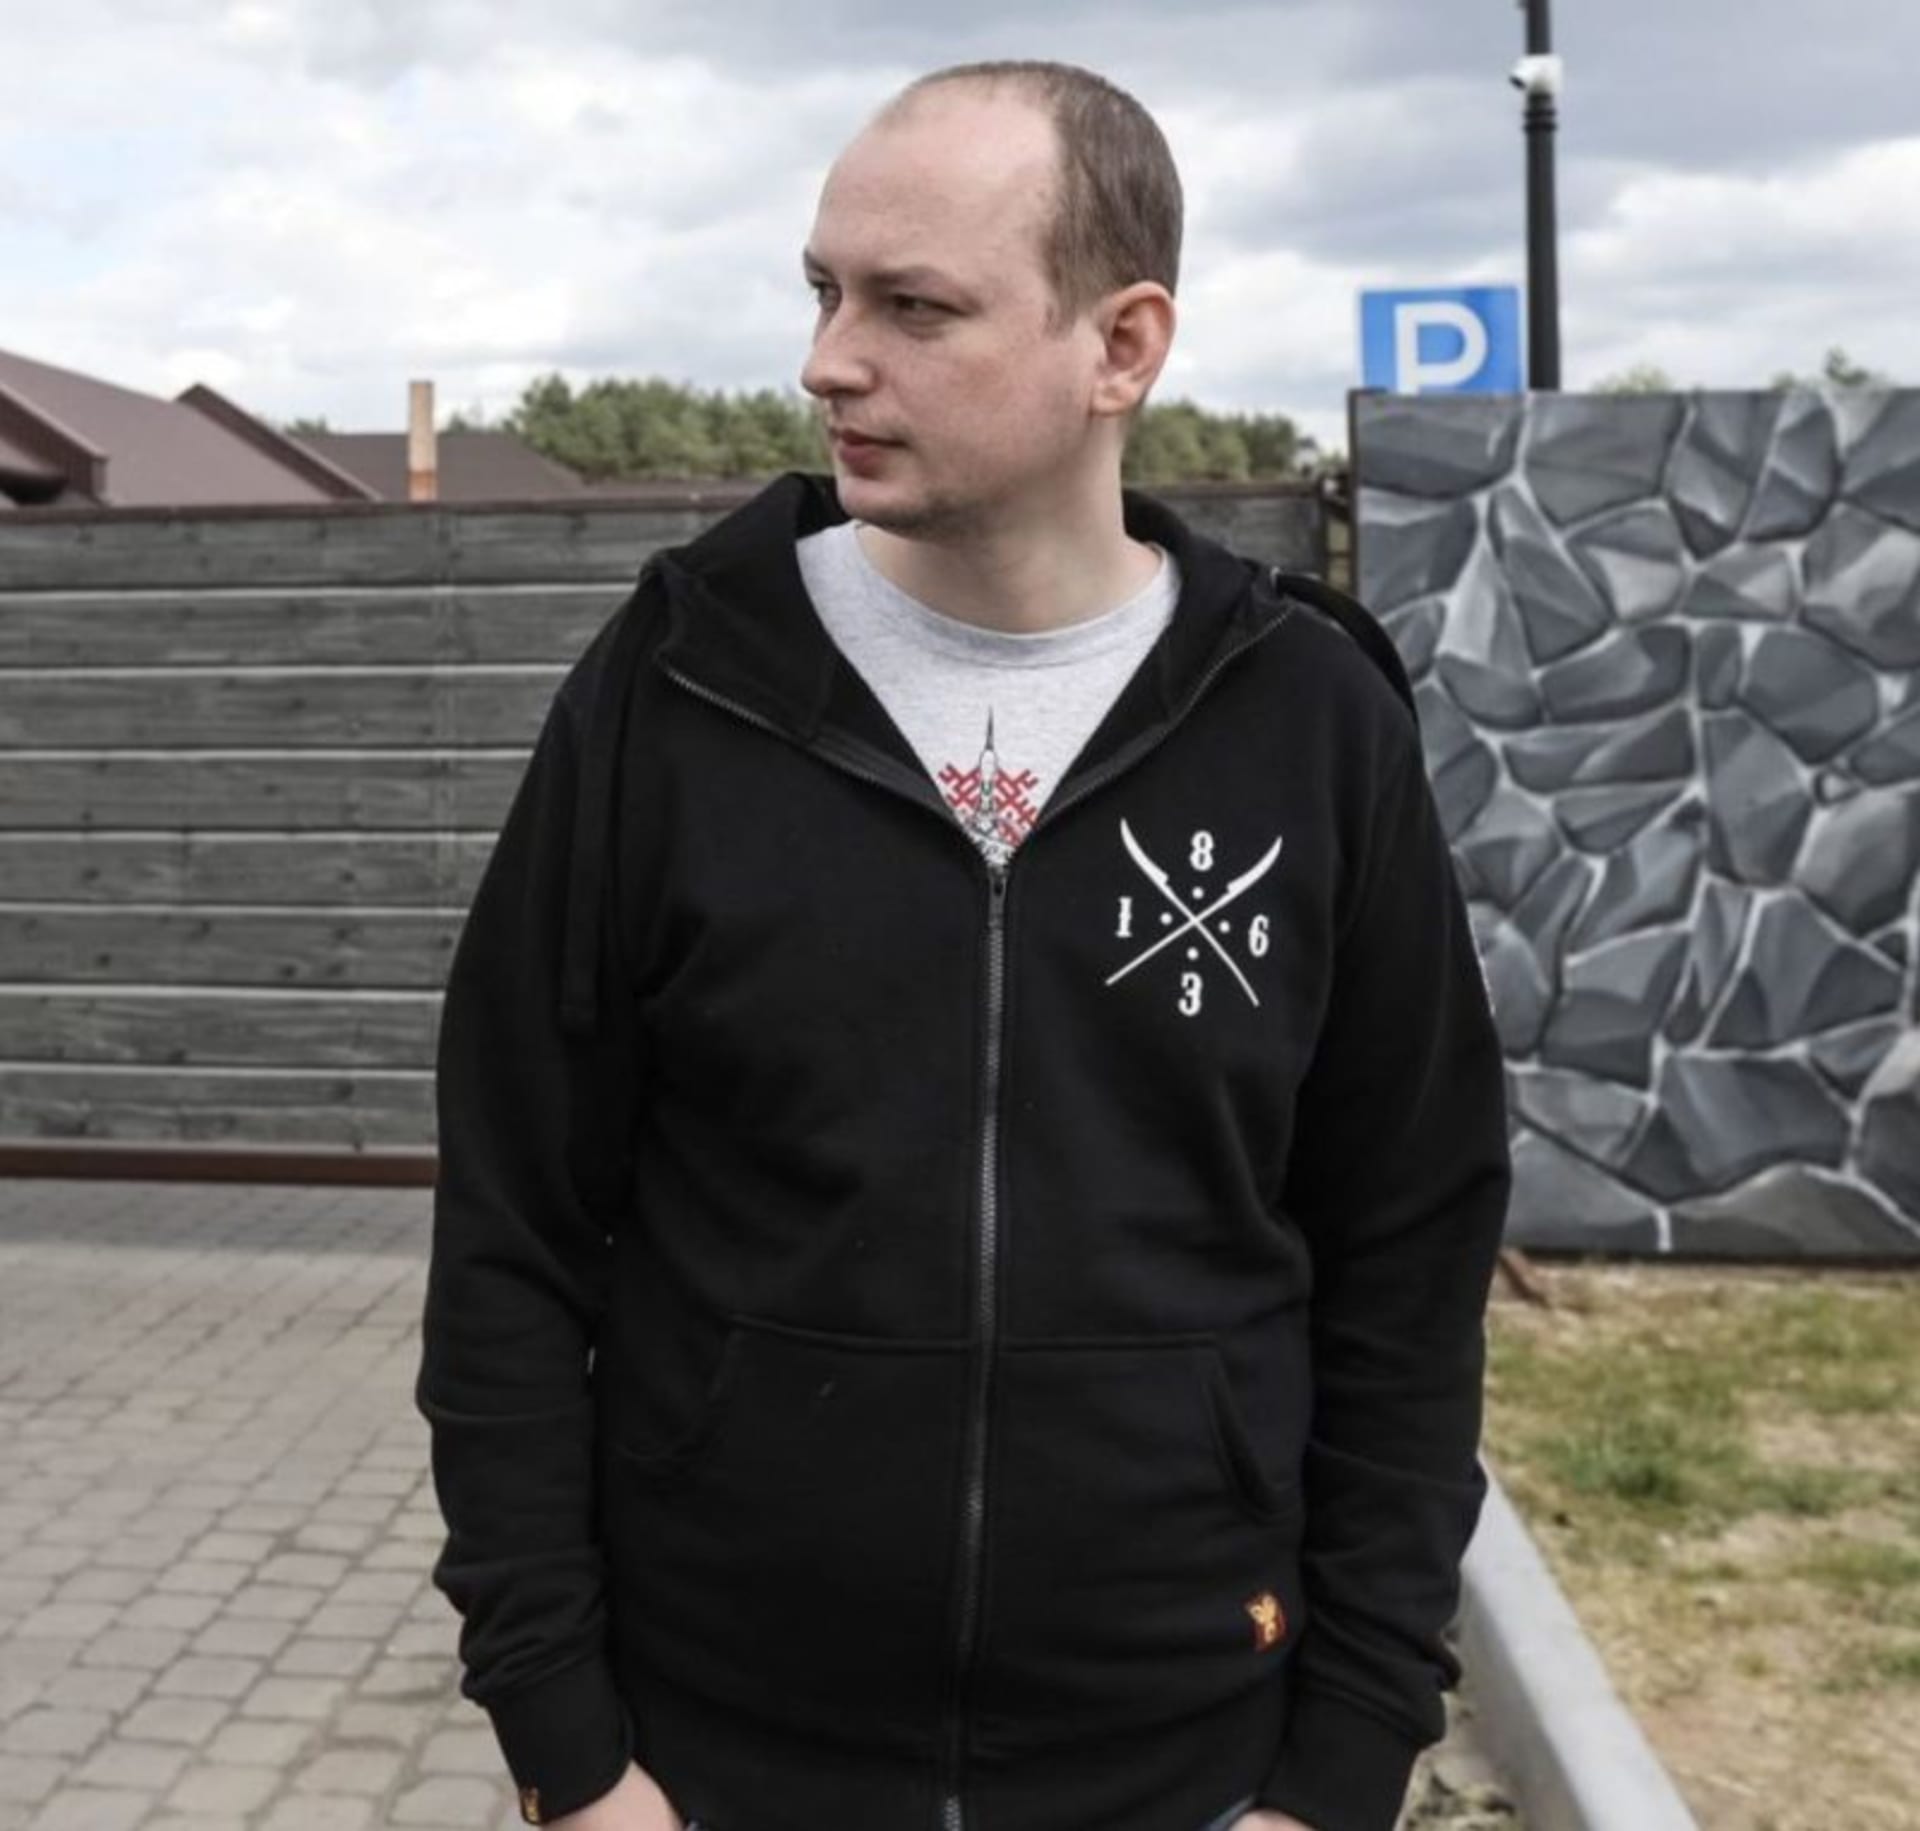 Eduard Palčys před zatčením, na soud už ve vazbě čeká více než rok. Foto: monitoring politických vězňů Vjasna, Bělorusko